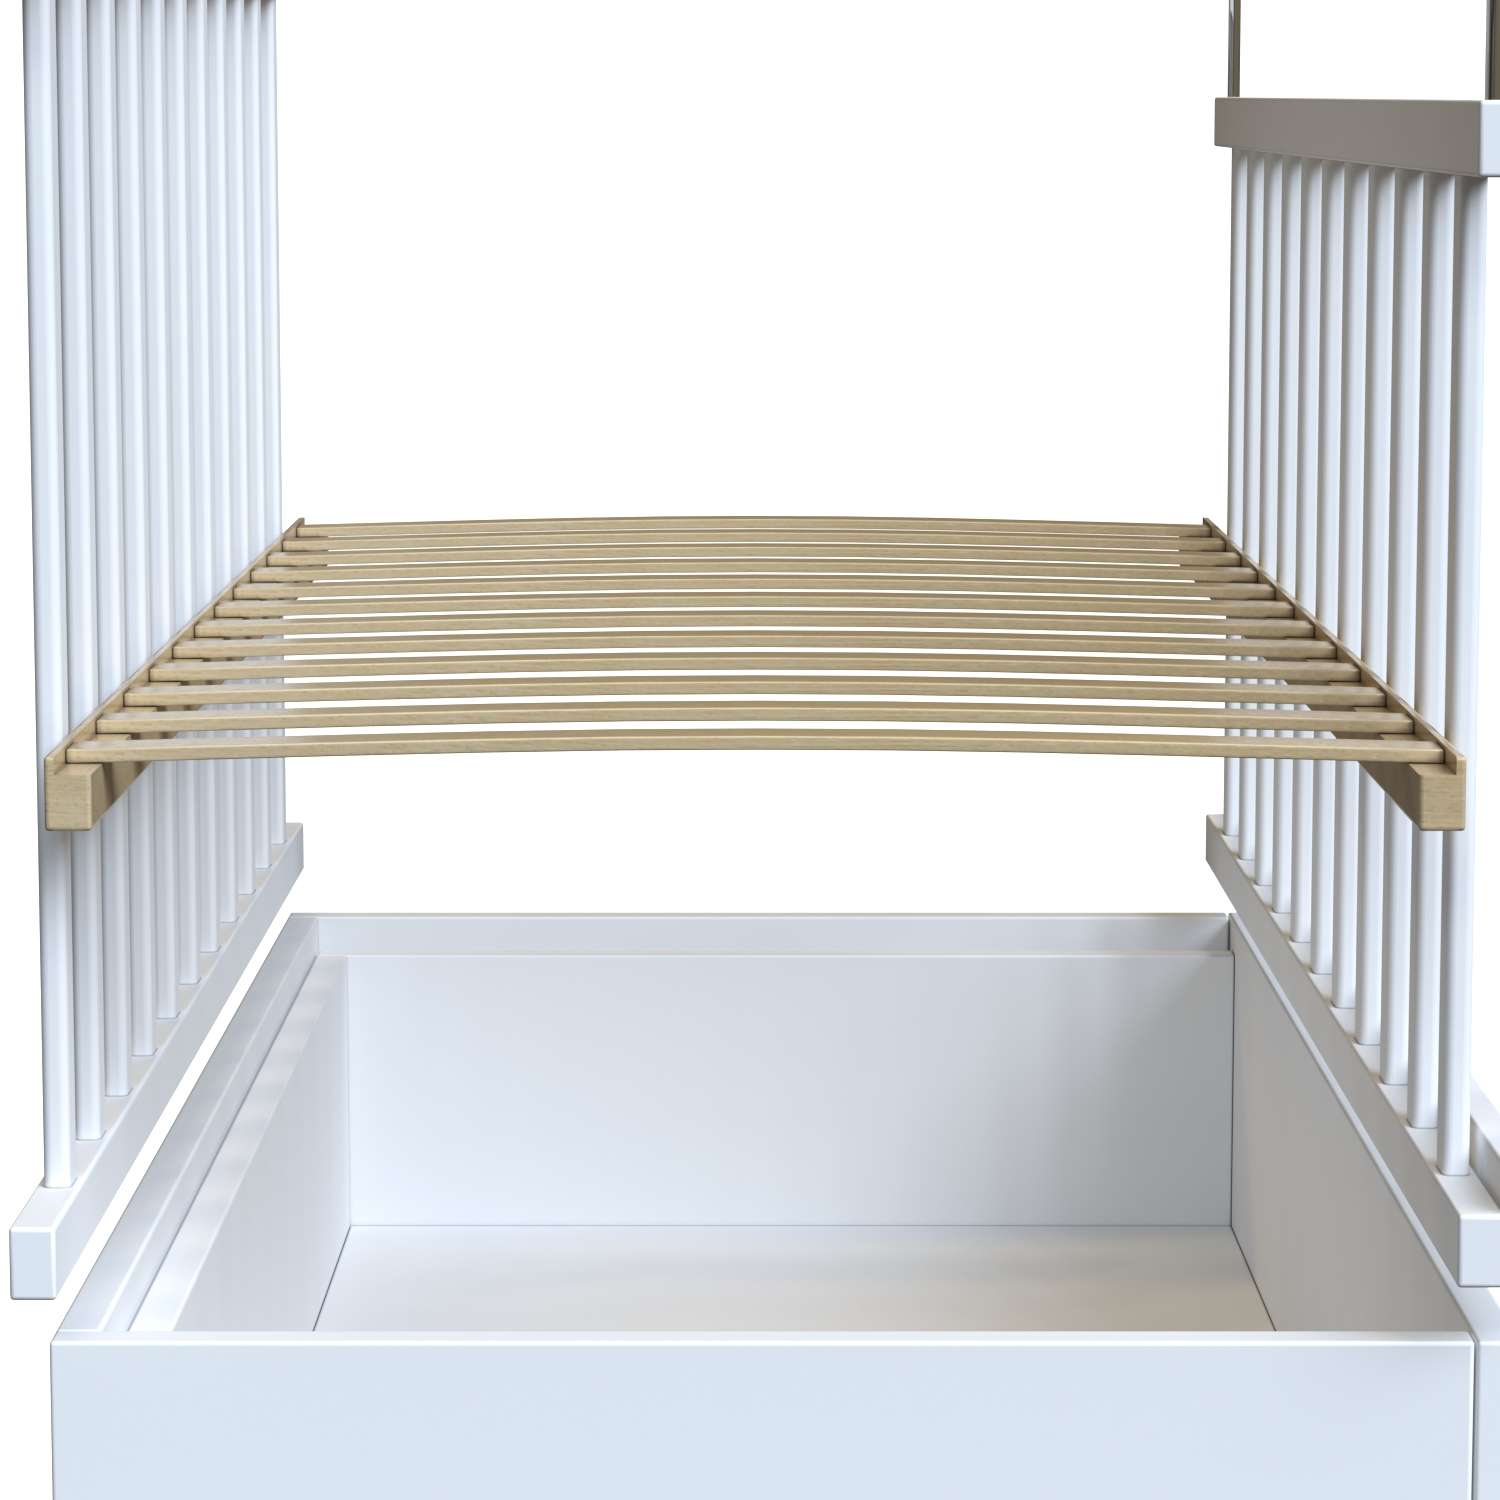 Детская кроватка ВДК прямоугольная, (белый) - фото 5